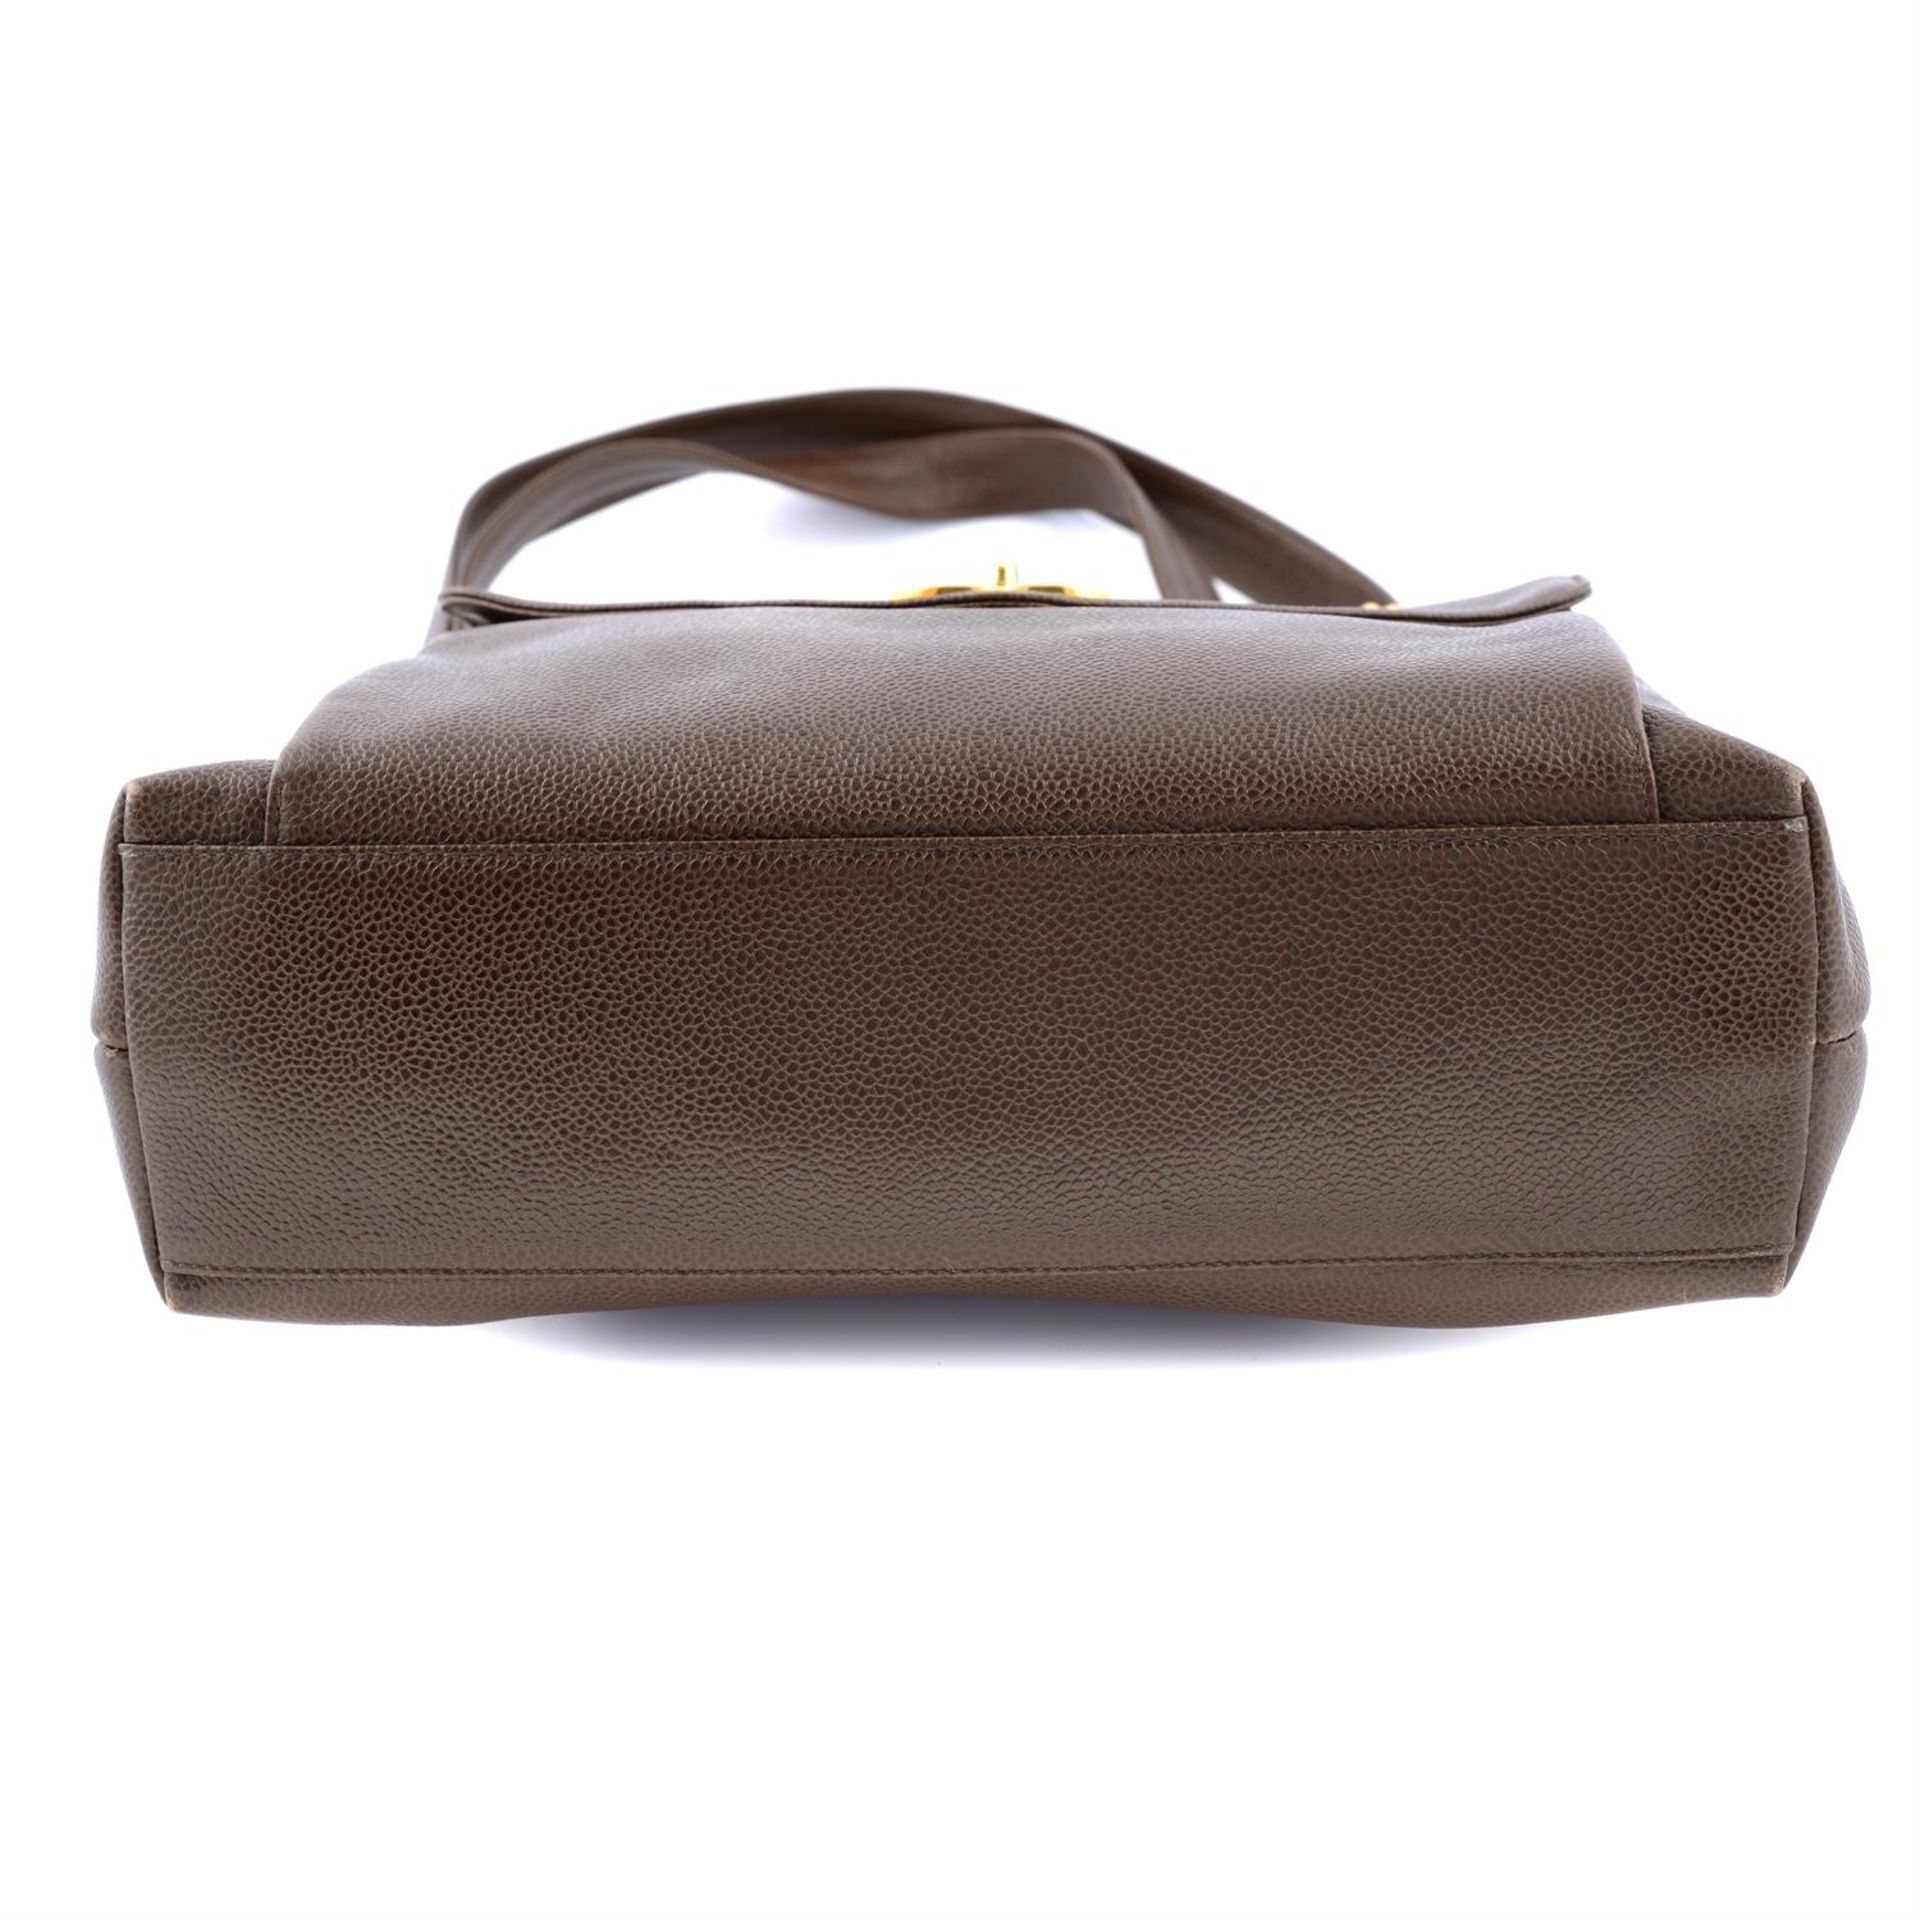 CHANEL - a vintage brown caviar leather handbag. - Image 5 of 6